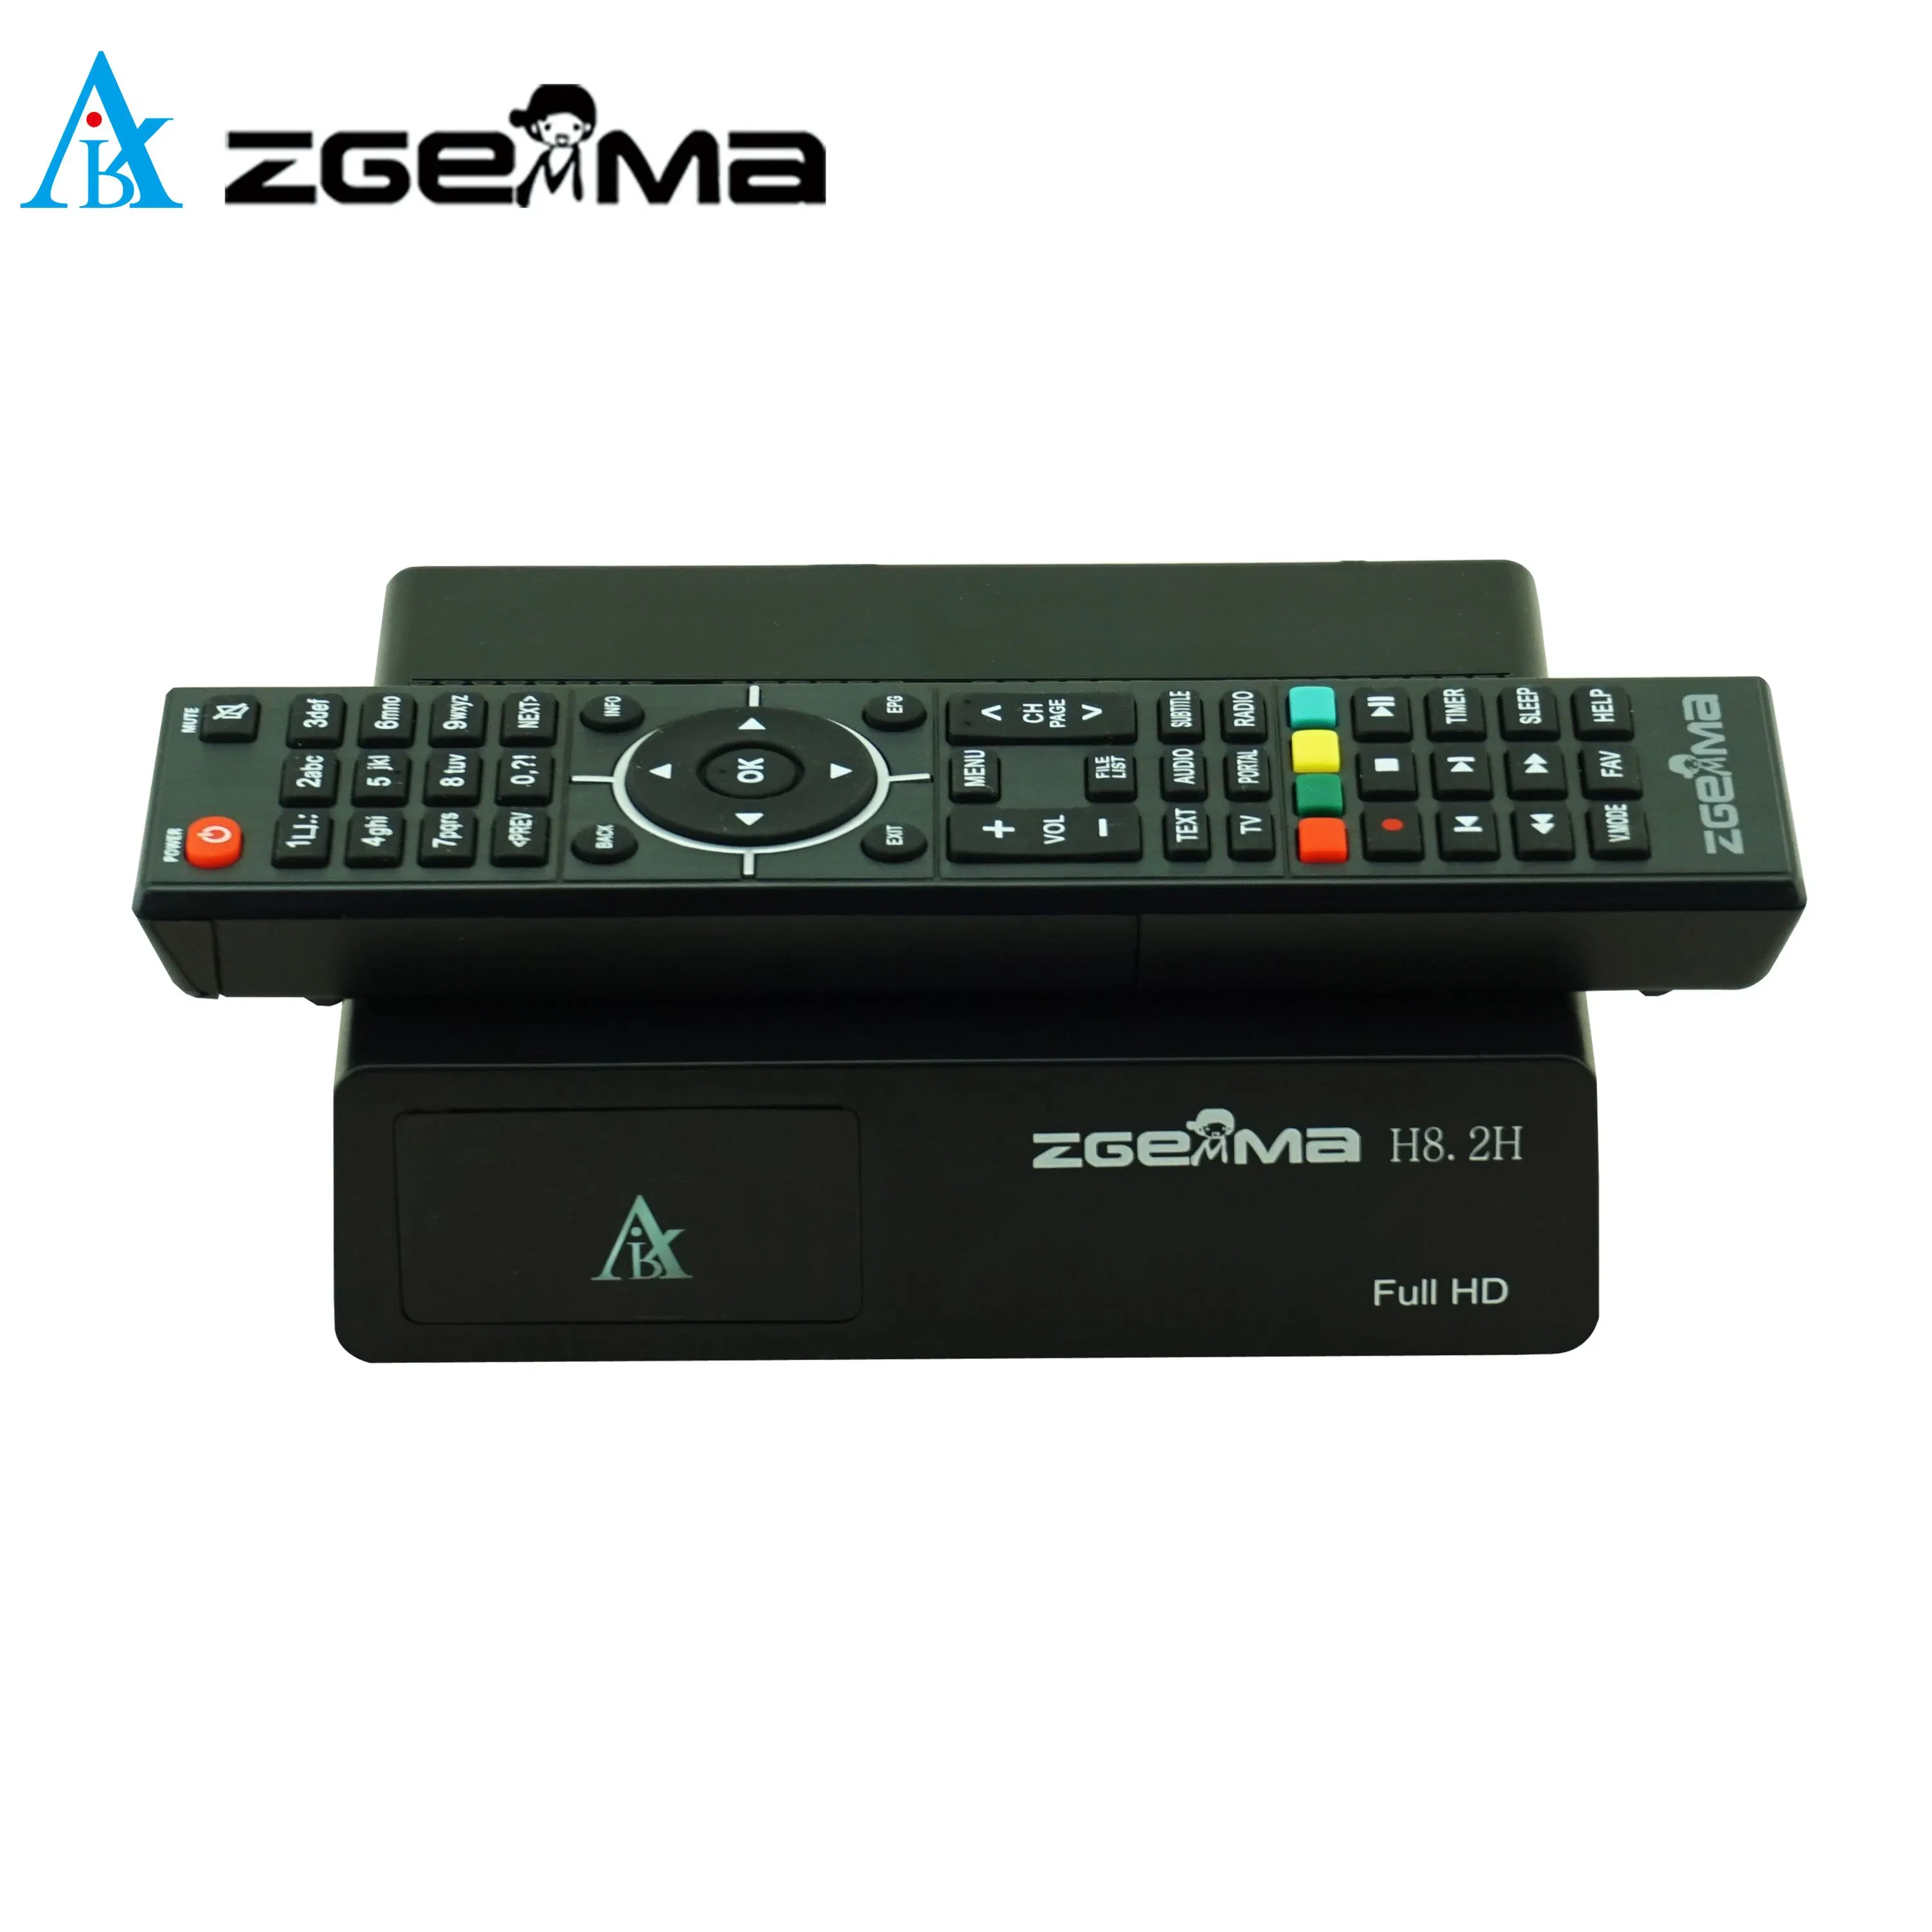 Zgemma H8,2h Satelliten-TV-Receiver - High Definition 1080p Auflösung, integrierter DVB-S2X + DVB-T2/C-Tuner